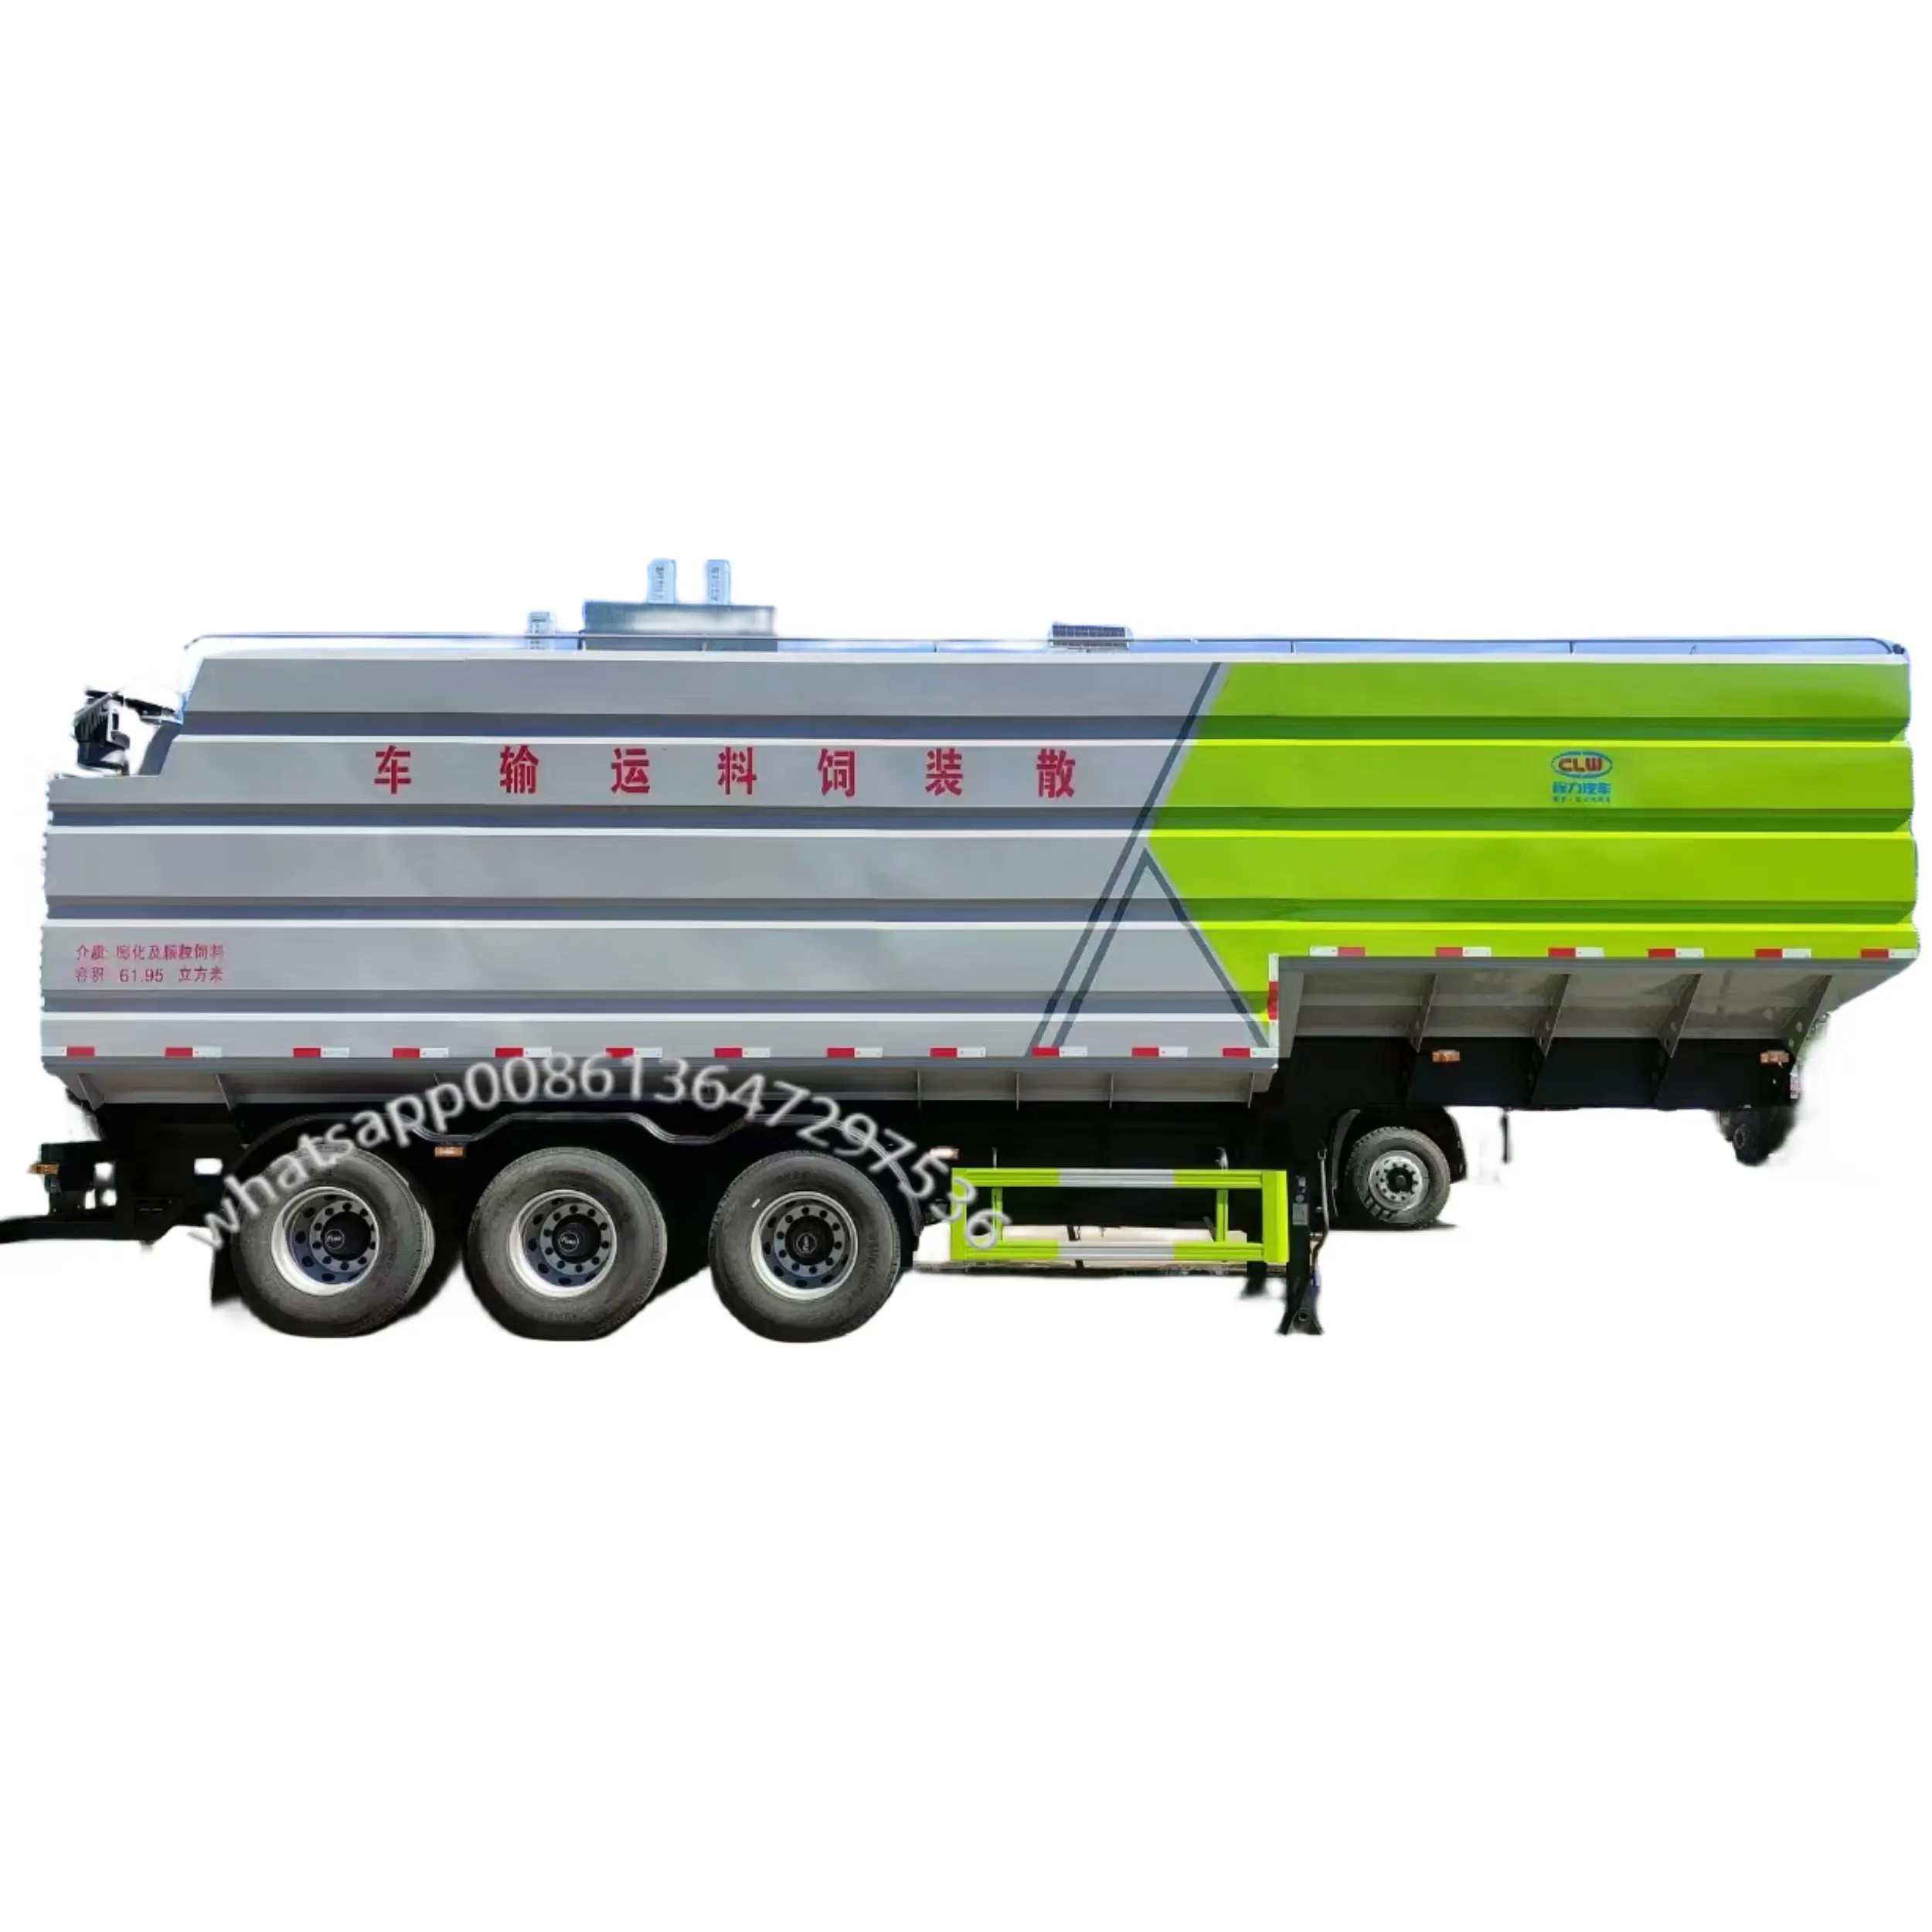 CLW Feed Truck Factory Supply garantiert 100% 60 m3 Aluminium legierung Bulk Geflügel futter träger/Transport Sattel auflieger